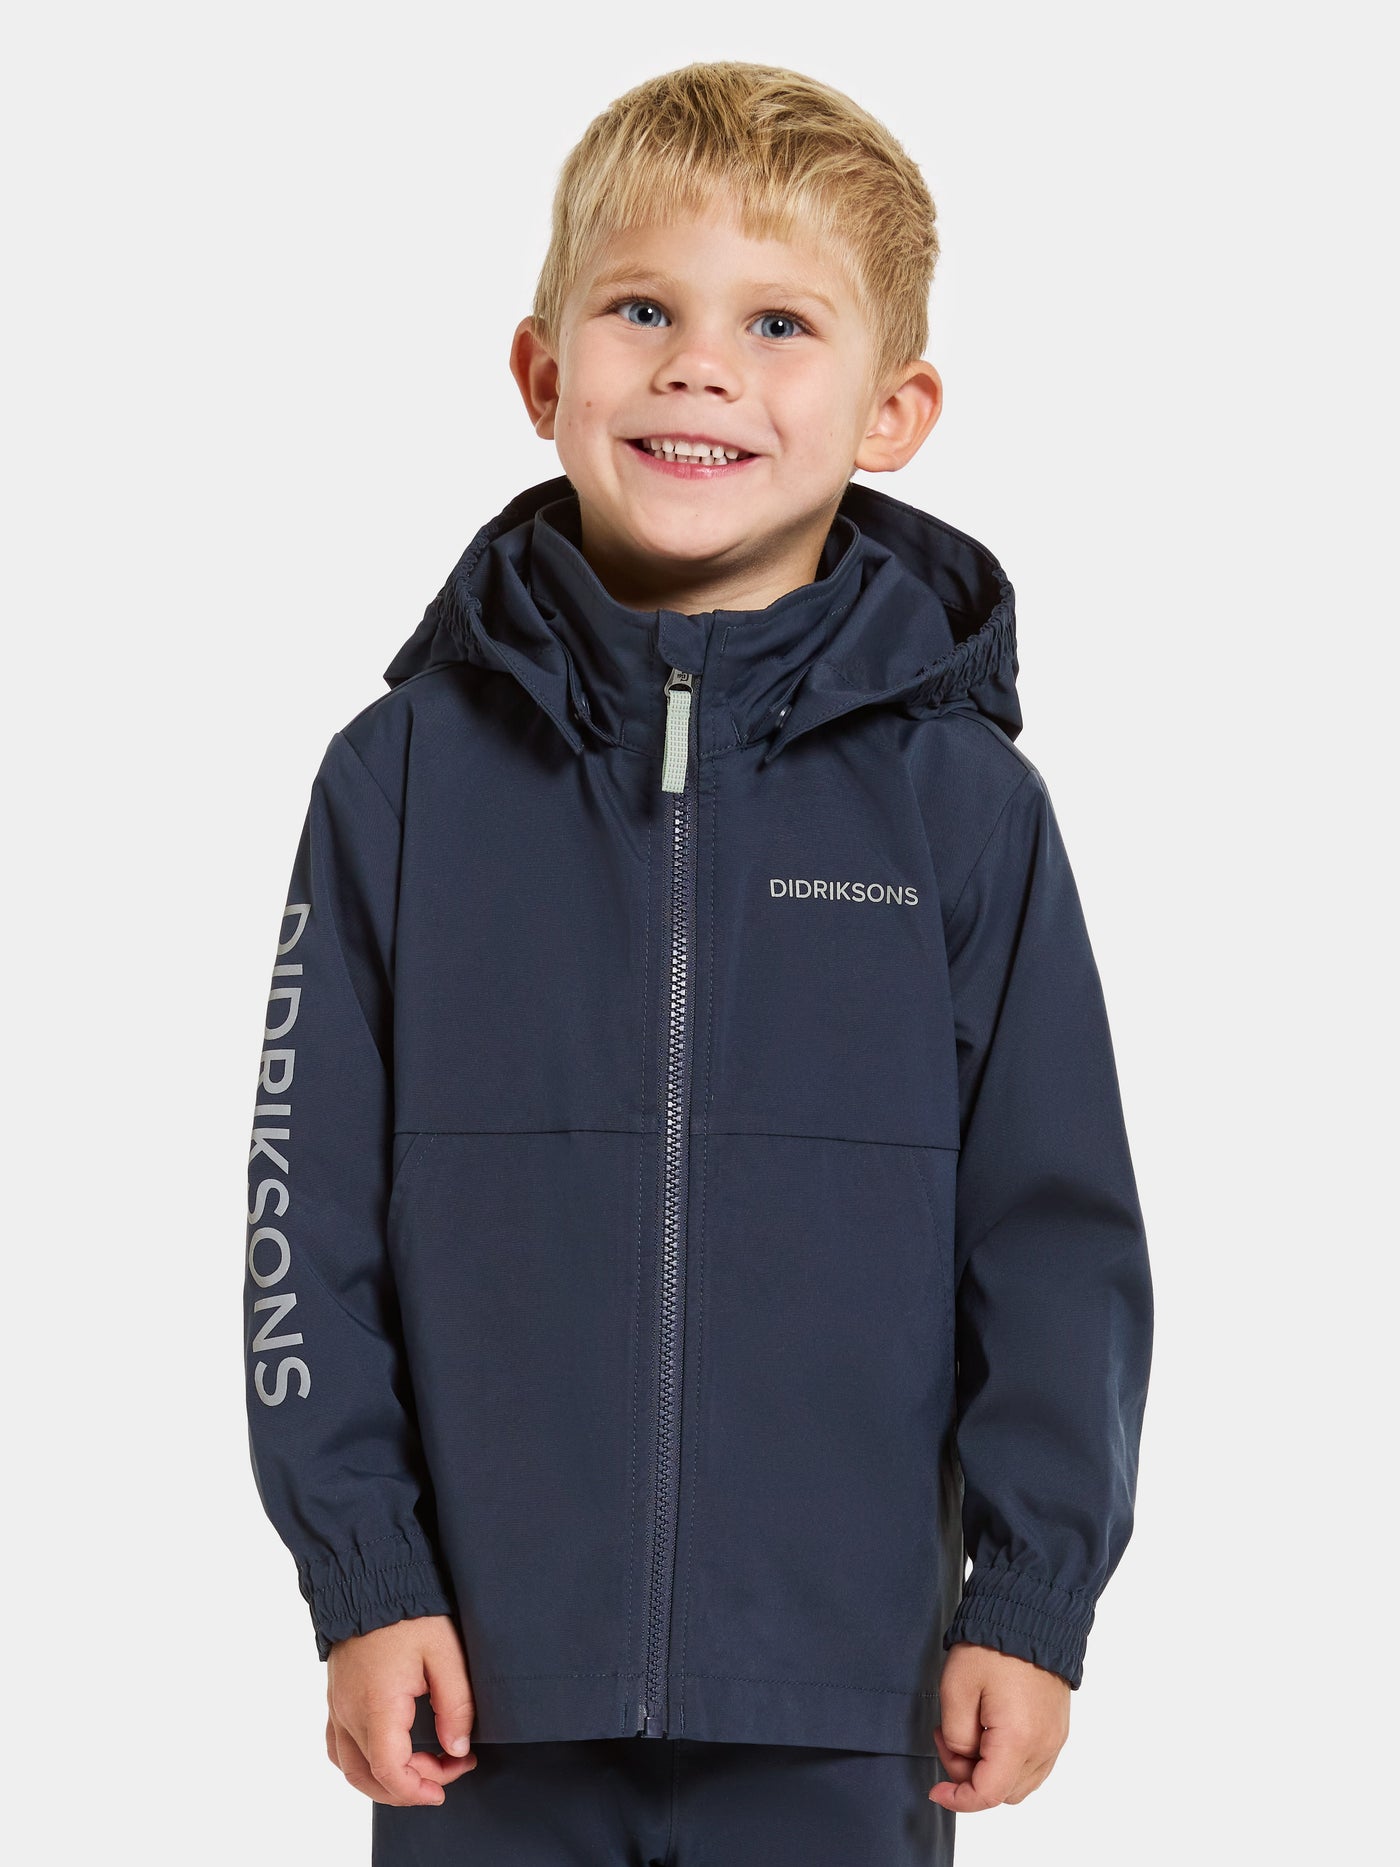 Hallon Kids Jacket - Outdoor-Jacke für Kinder